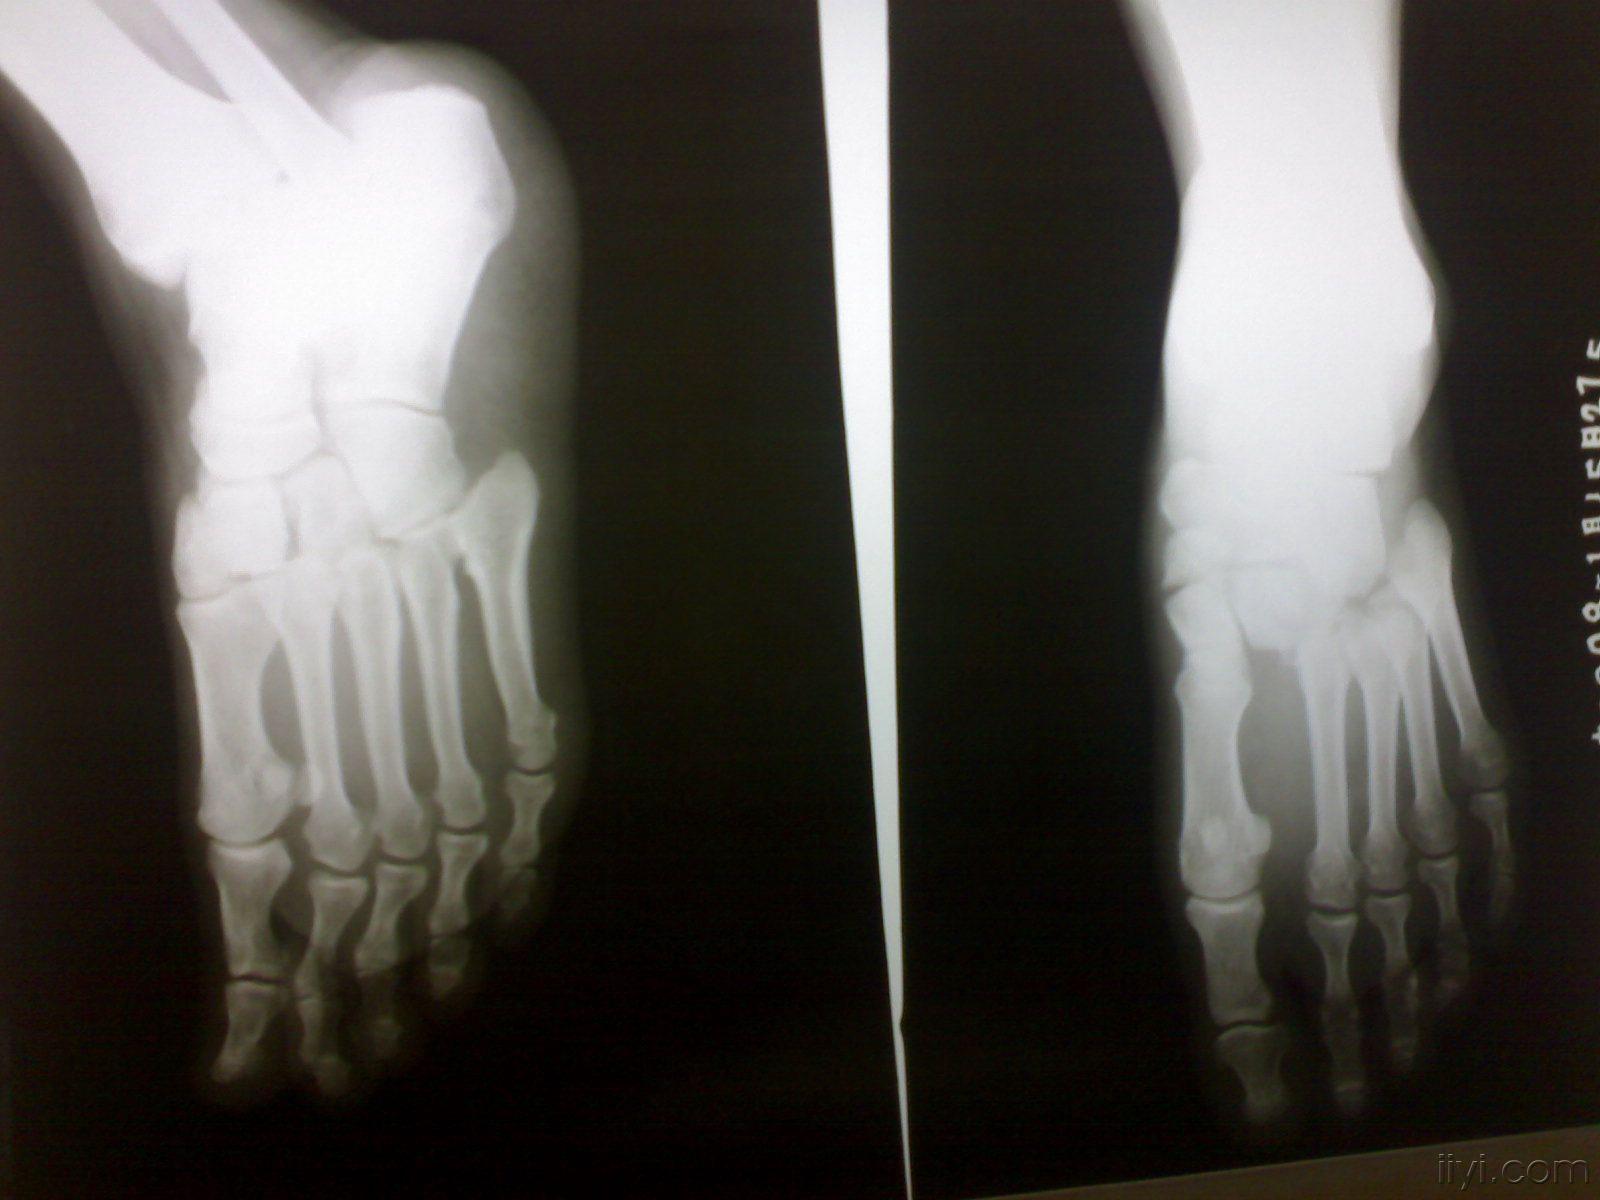 现将近期遇见的1例,常规摄右足正斜位x线片,显示右足跗跖关节跖骨端向